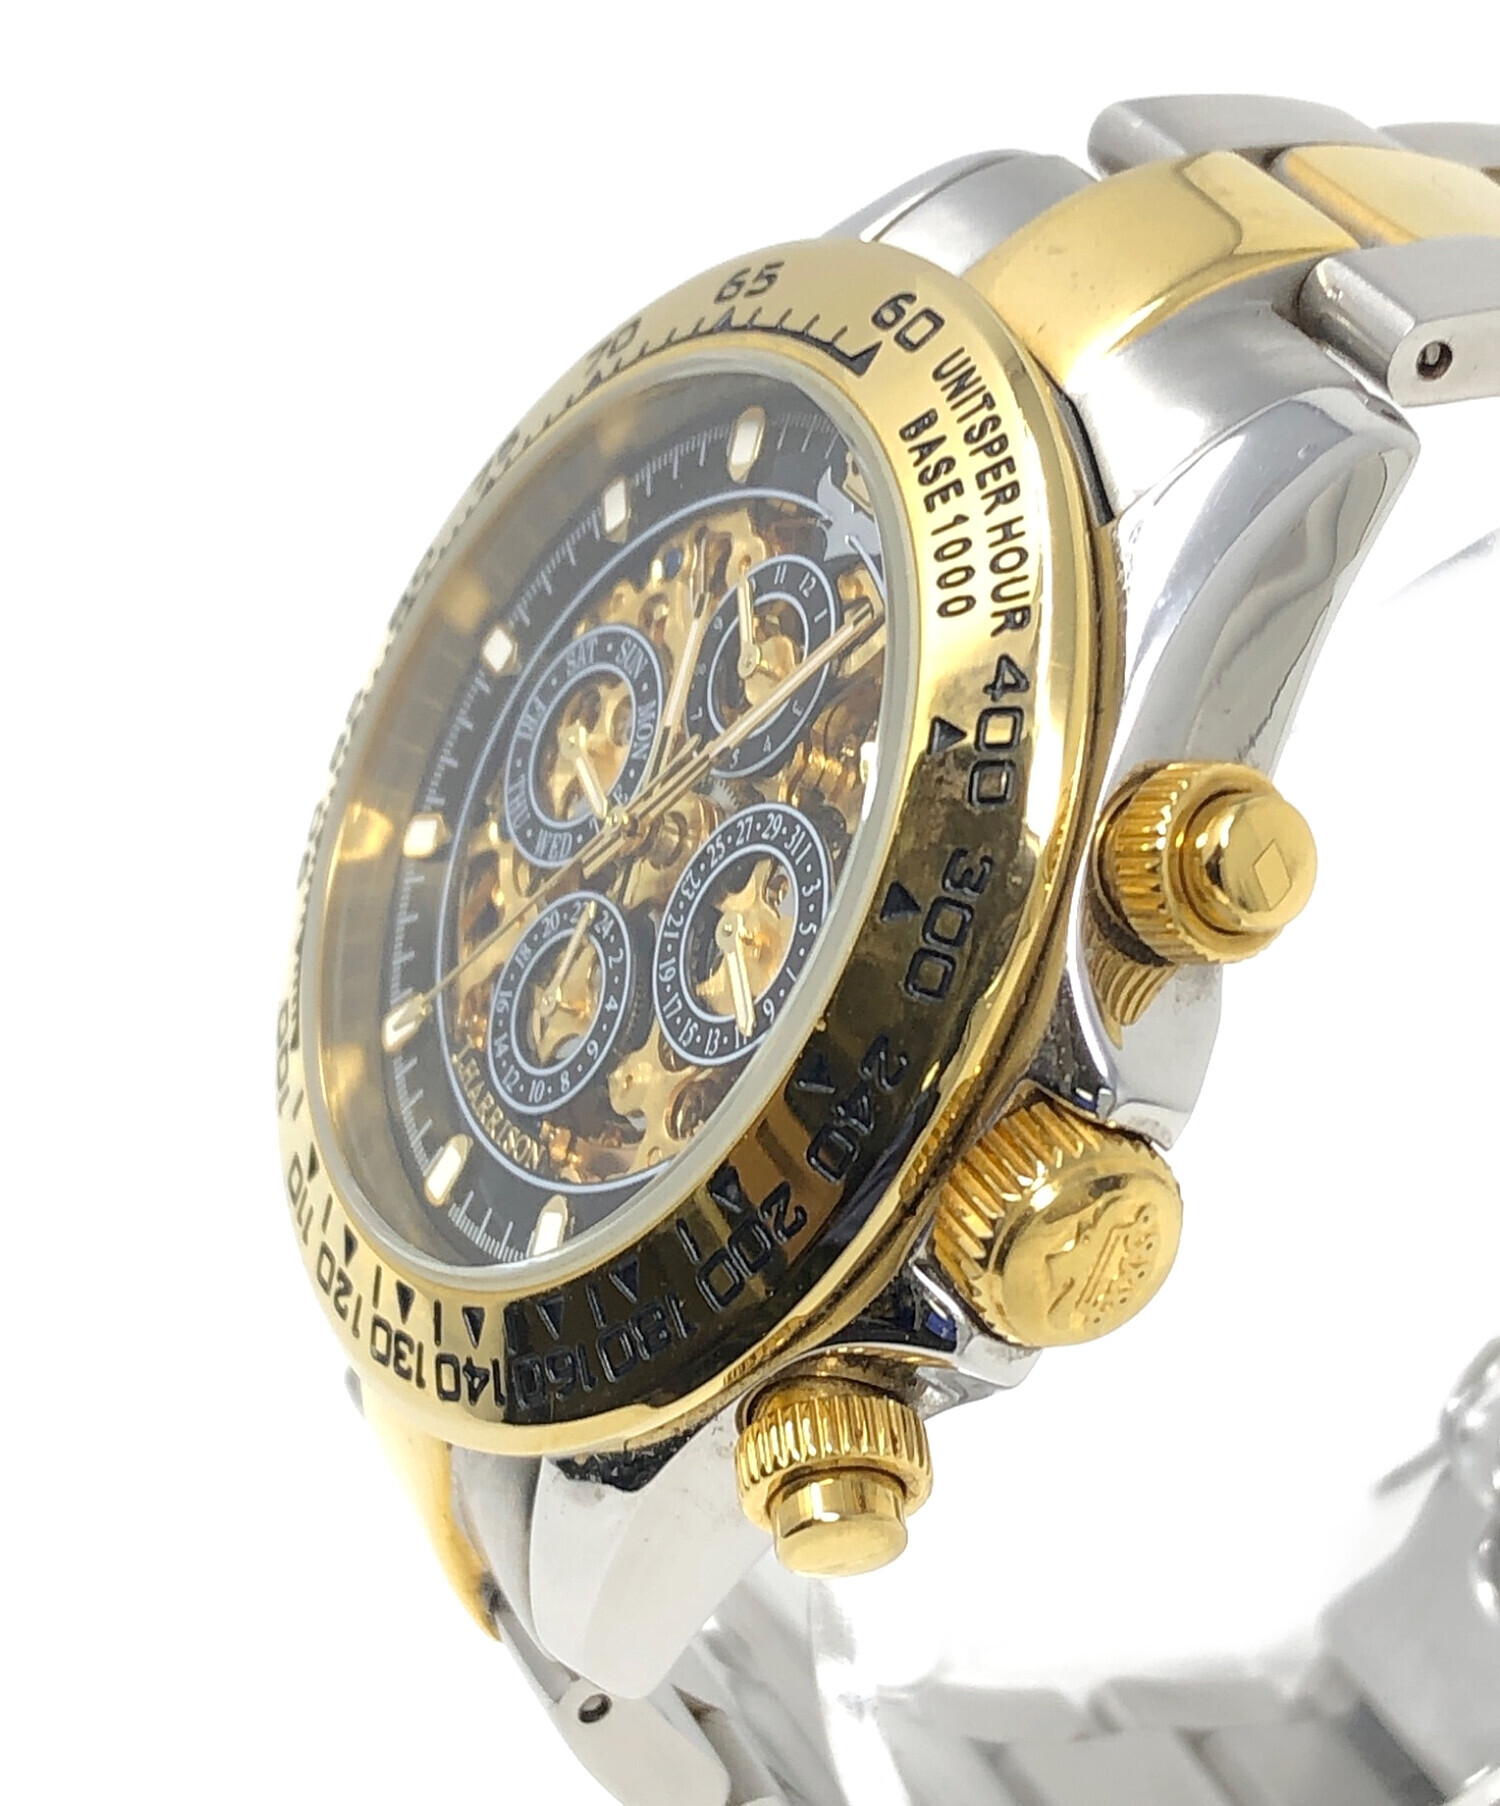 J.HARRISON (ジョン・ハリソン) 腕時計 自動巻き サイズ:実寸サイズにてご確認ください。